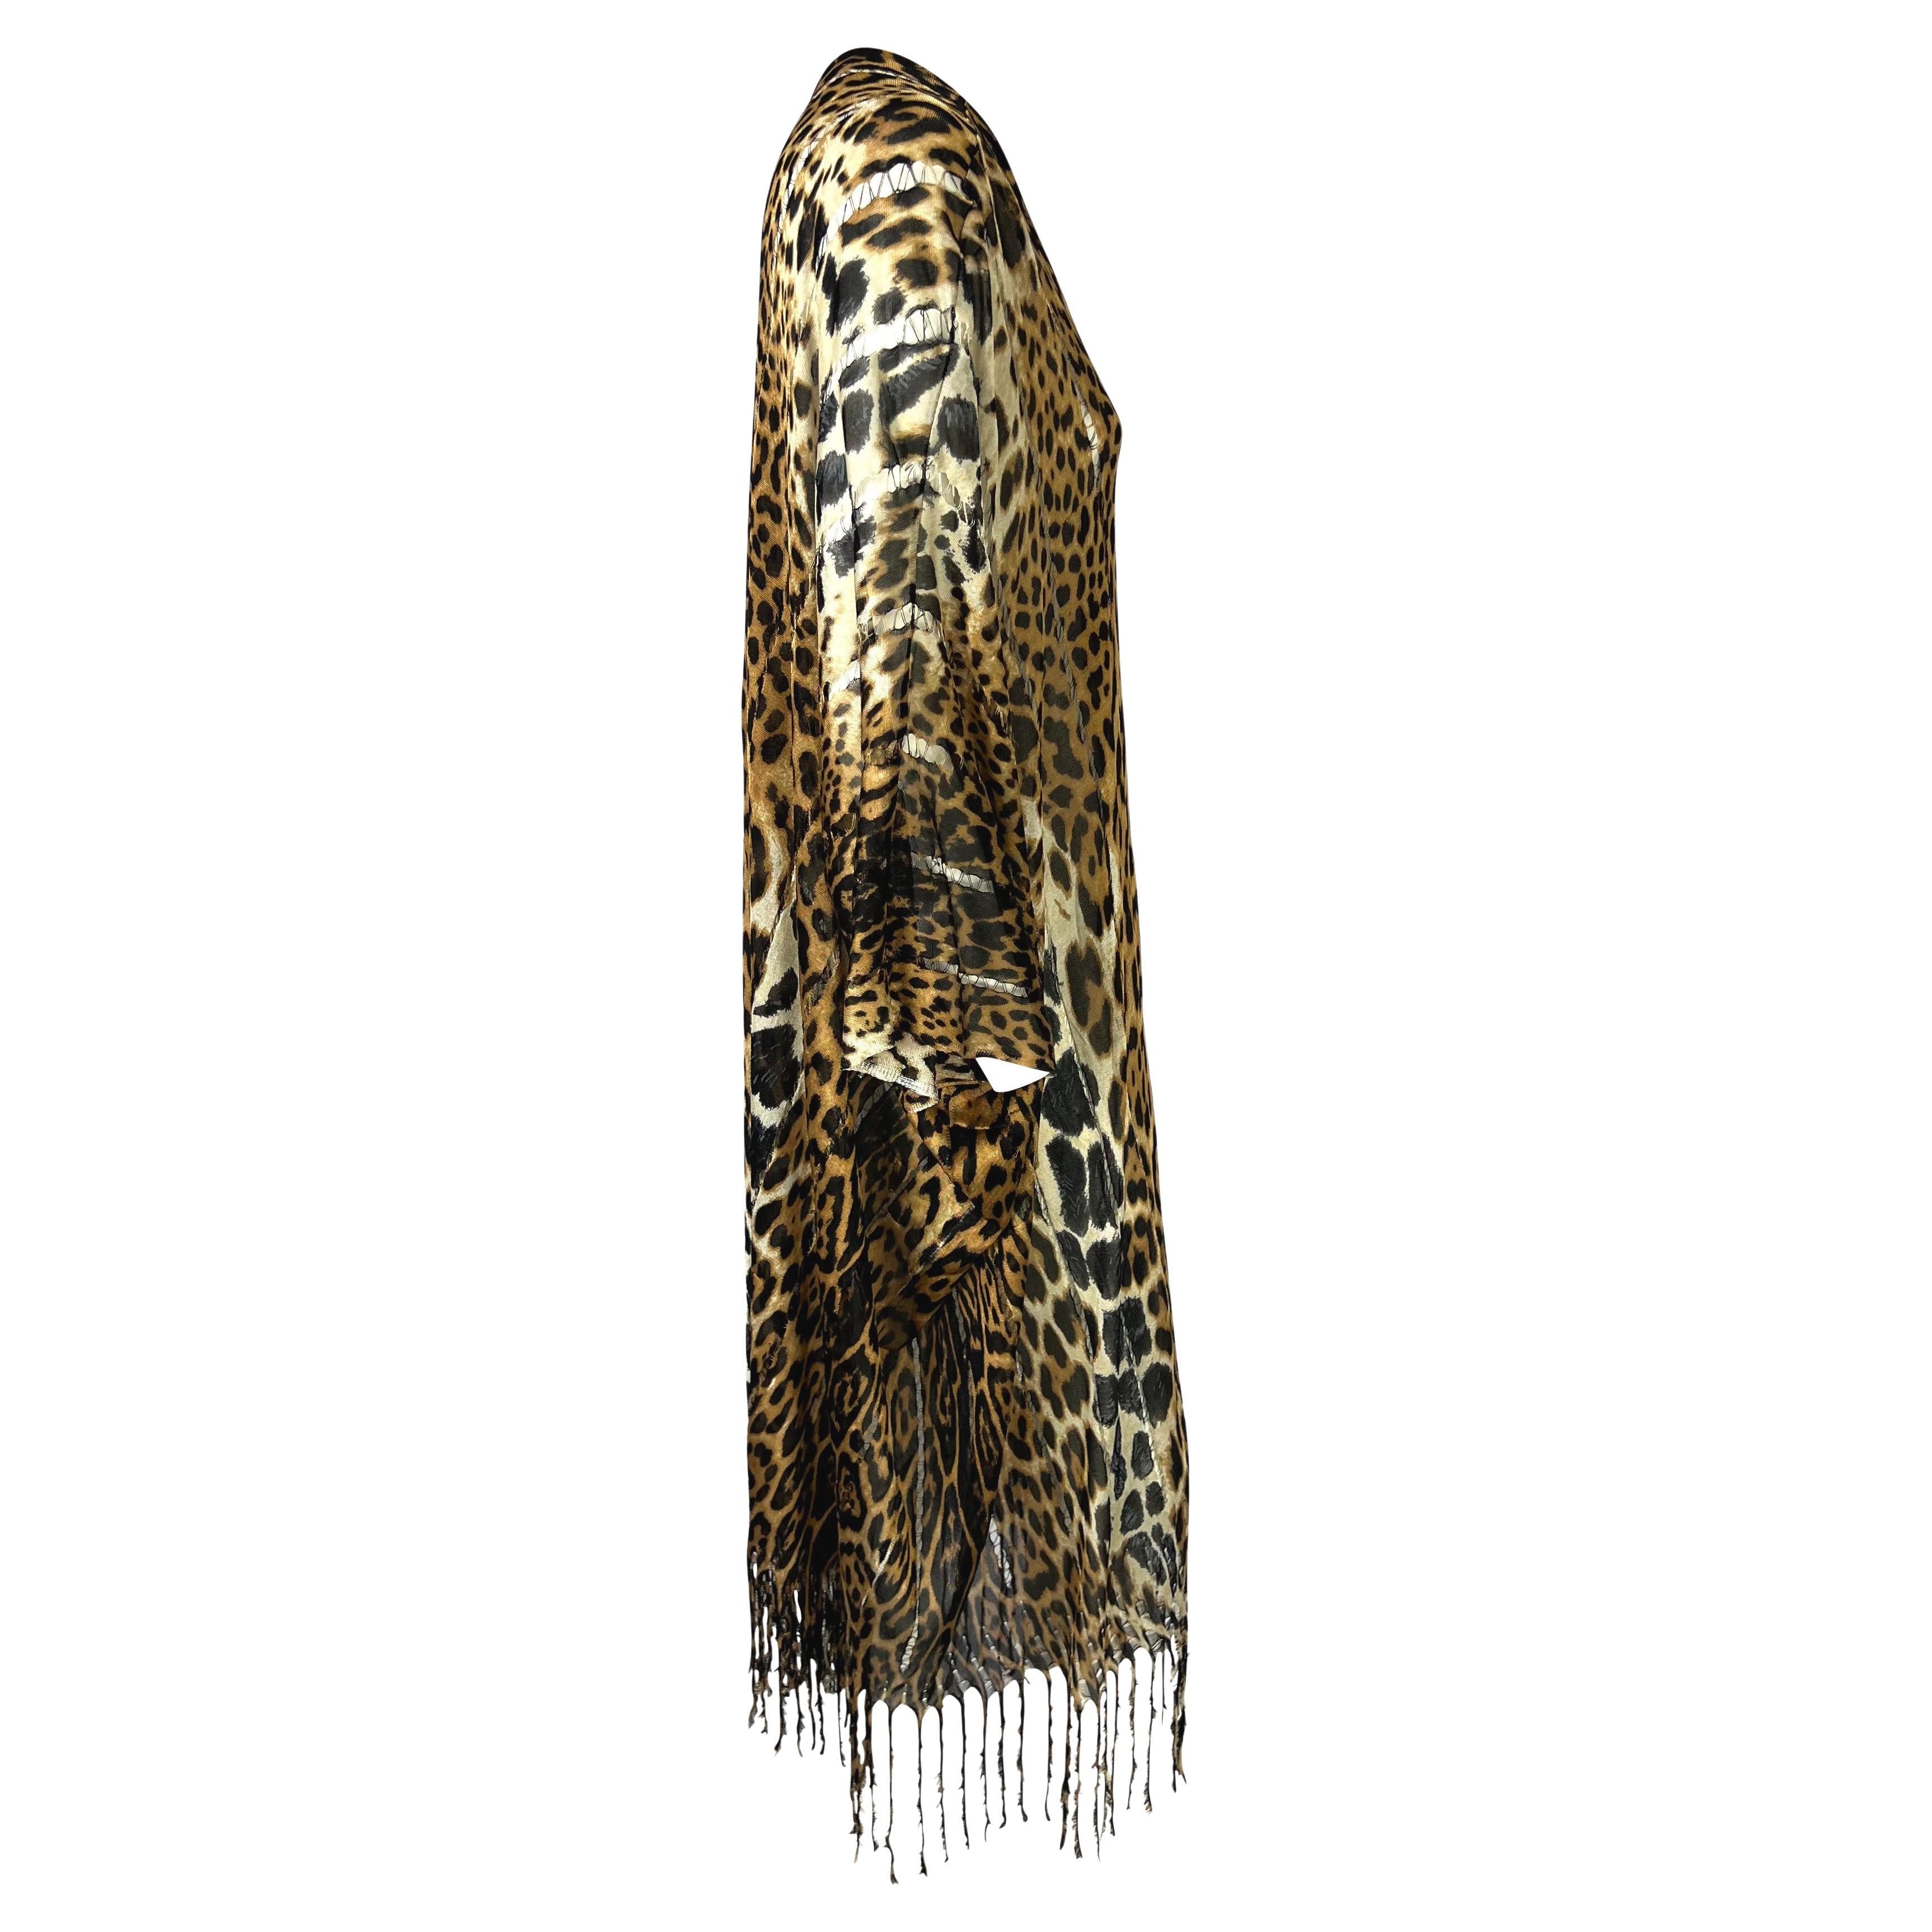 S/S 2002 Yves Saint Laurent by Tom Ford Safari Cheetah Print Sheer Caftan Fringe 2